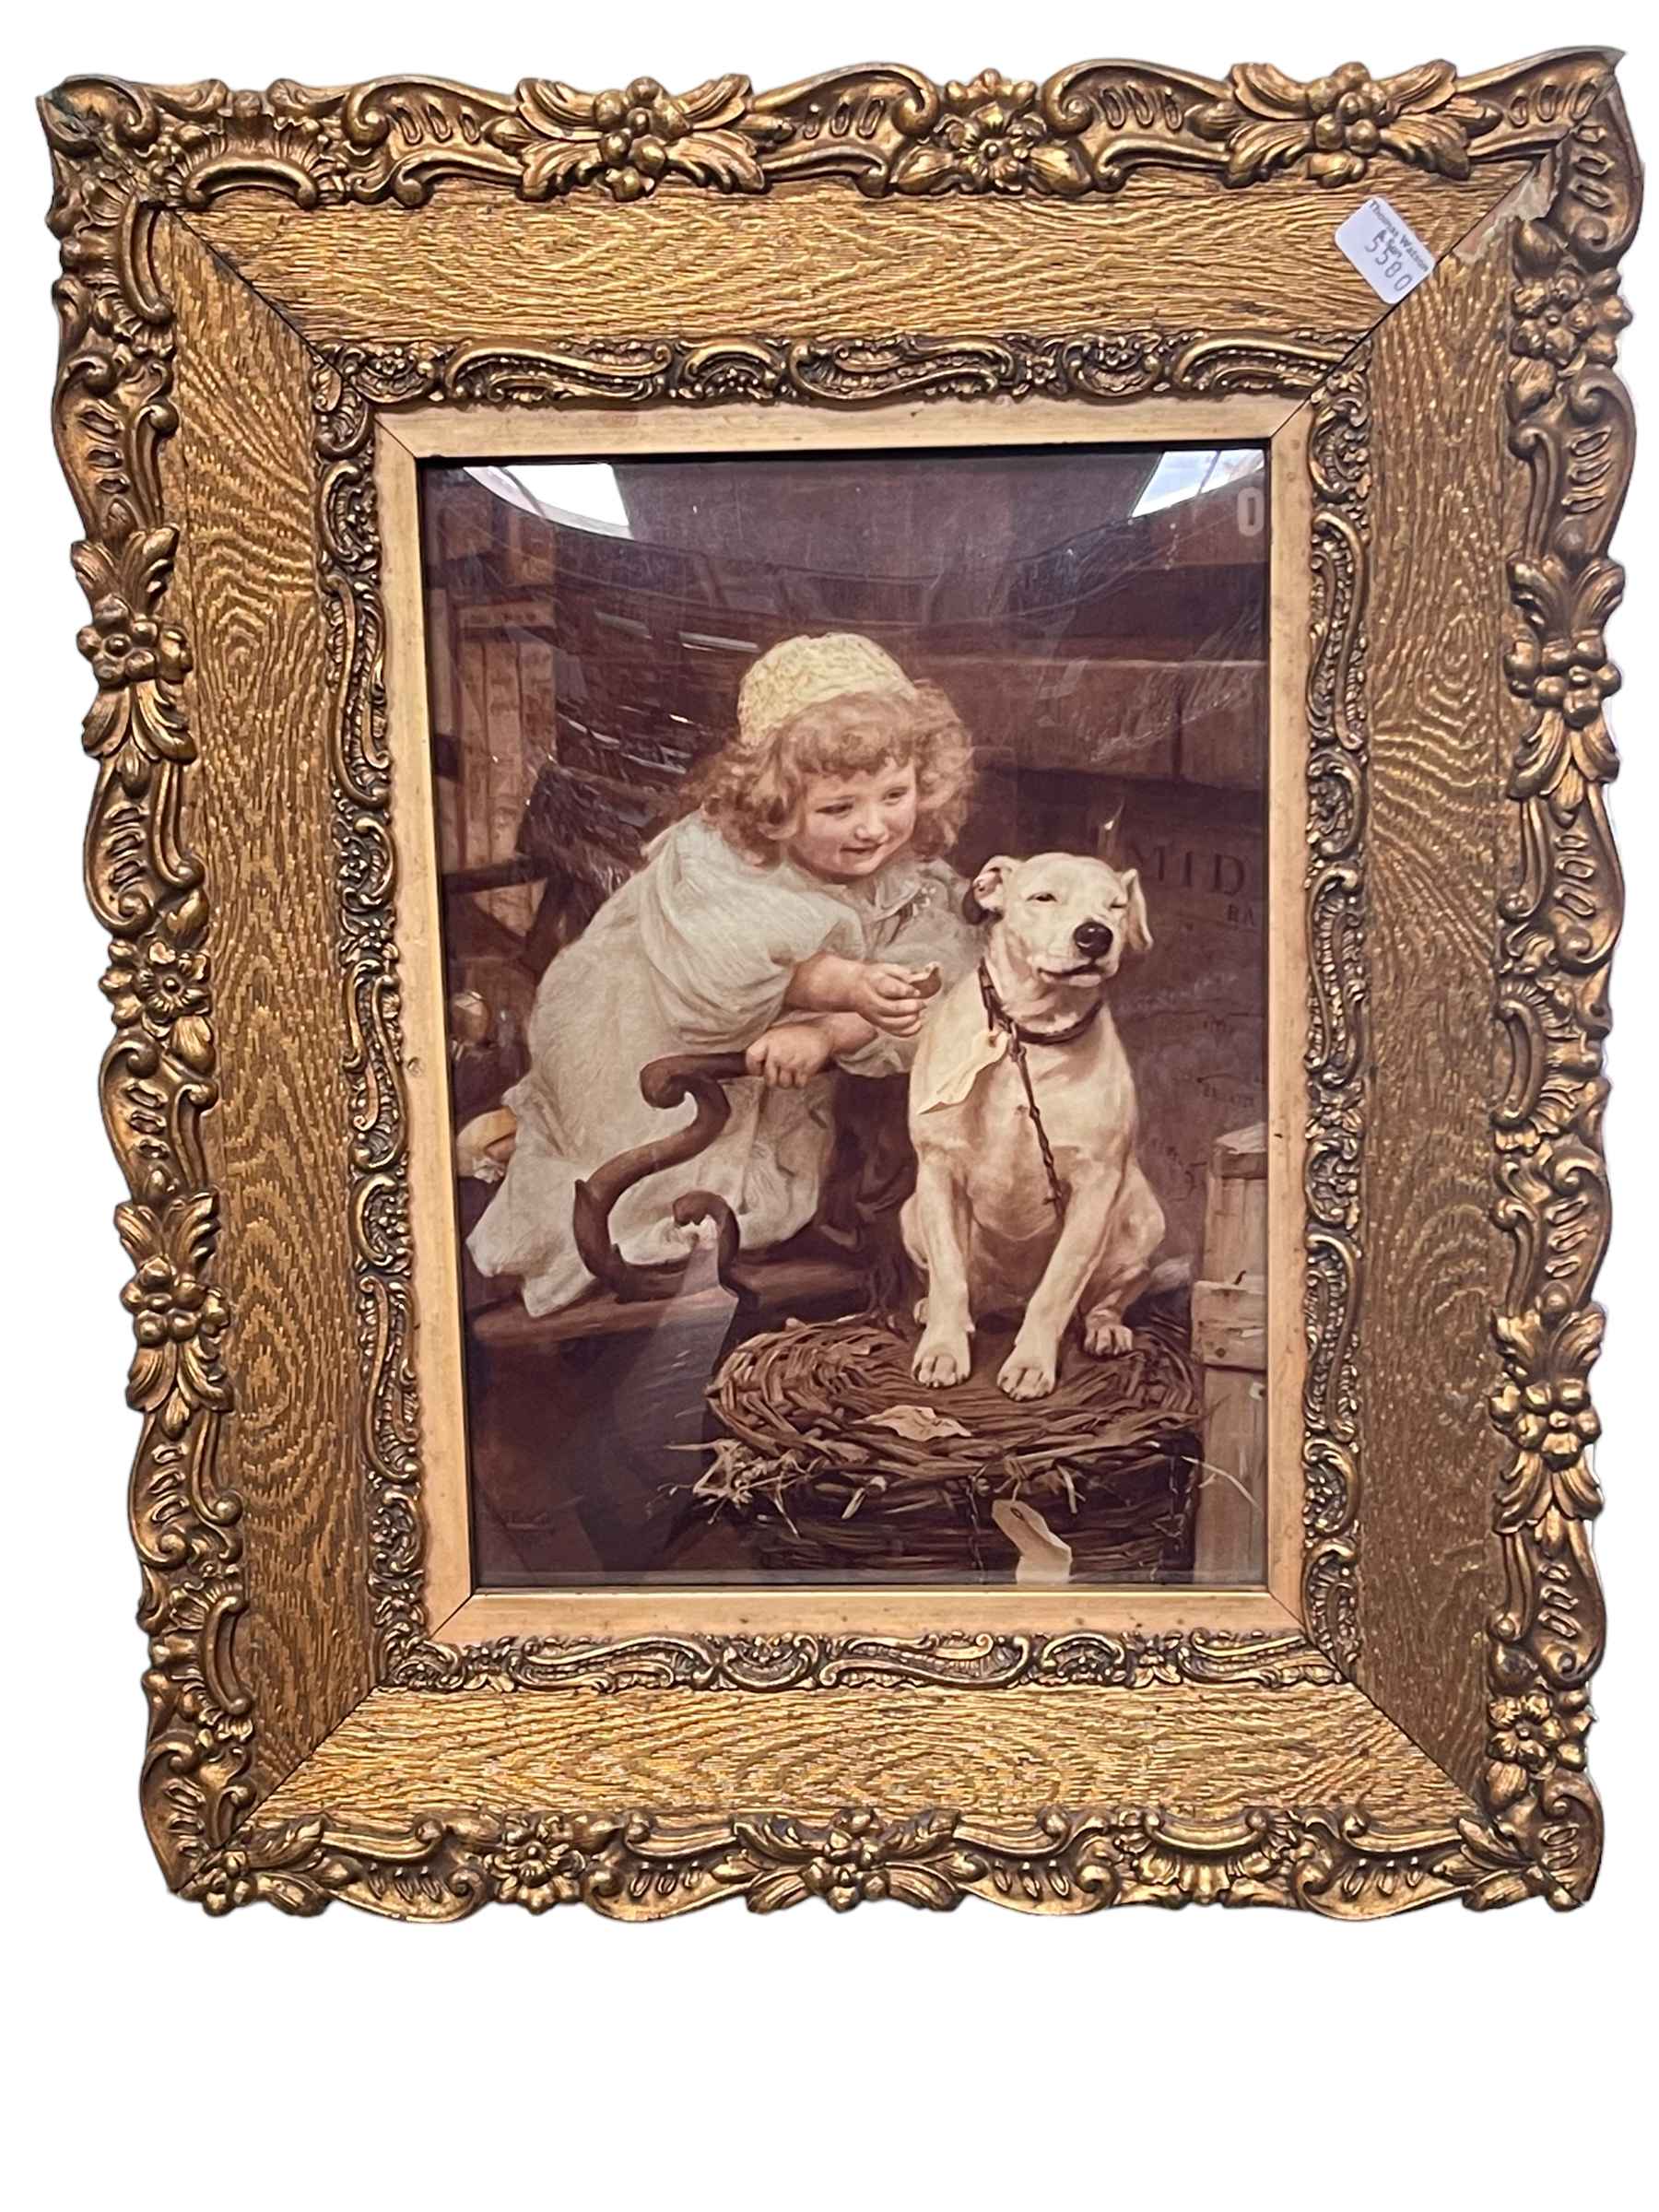 Gilt framed bevelled chrystoleum depicting Girl with Dog, 40cm by 33cm, including frame.